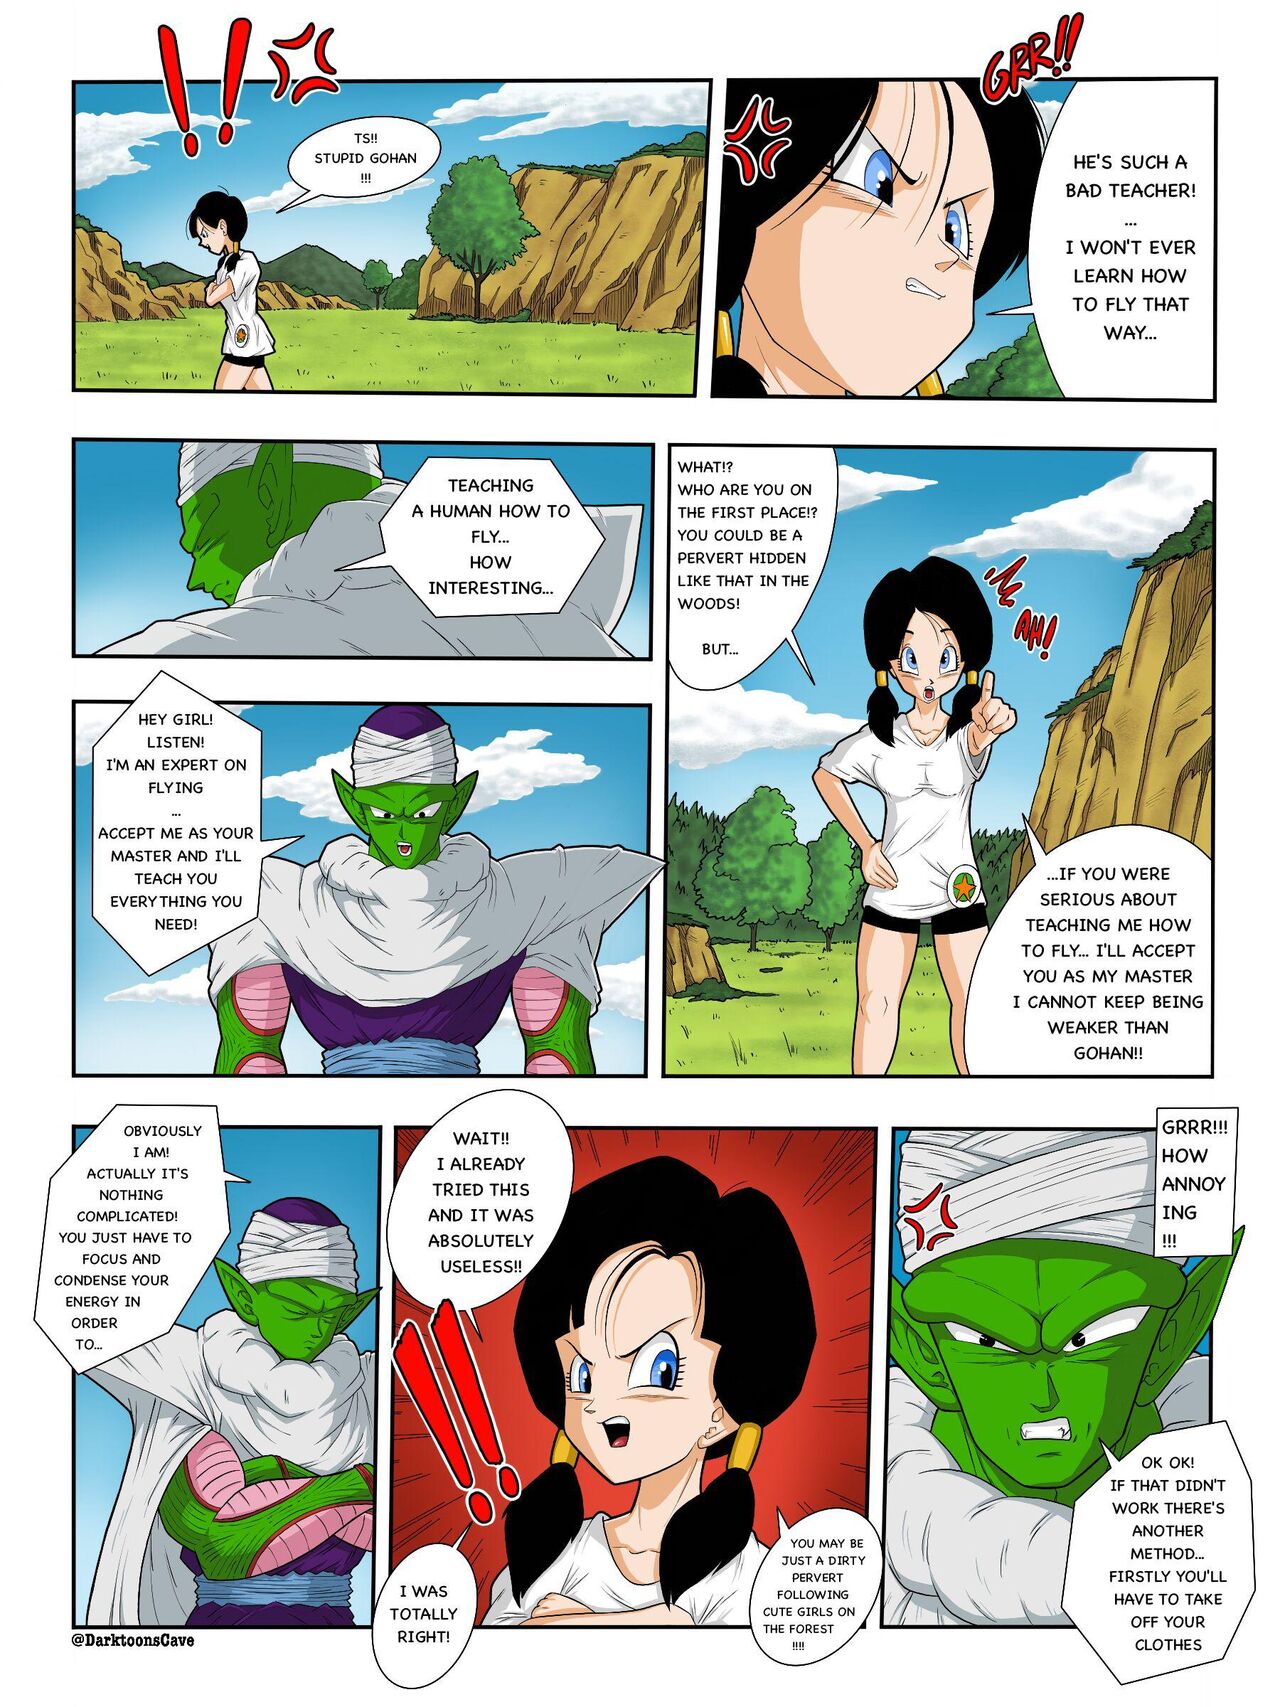 Green Master Darktoons Cave 3